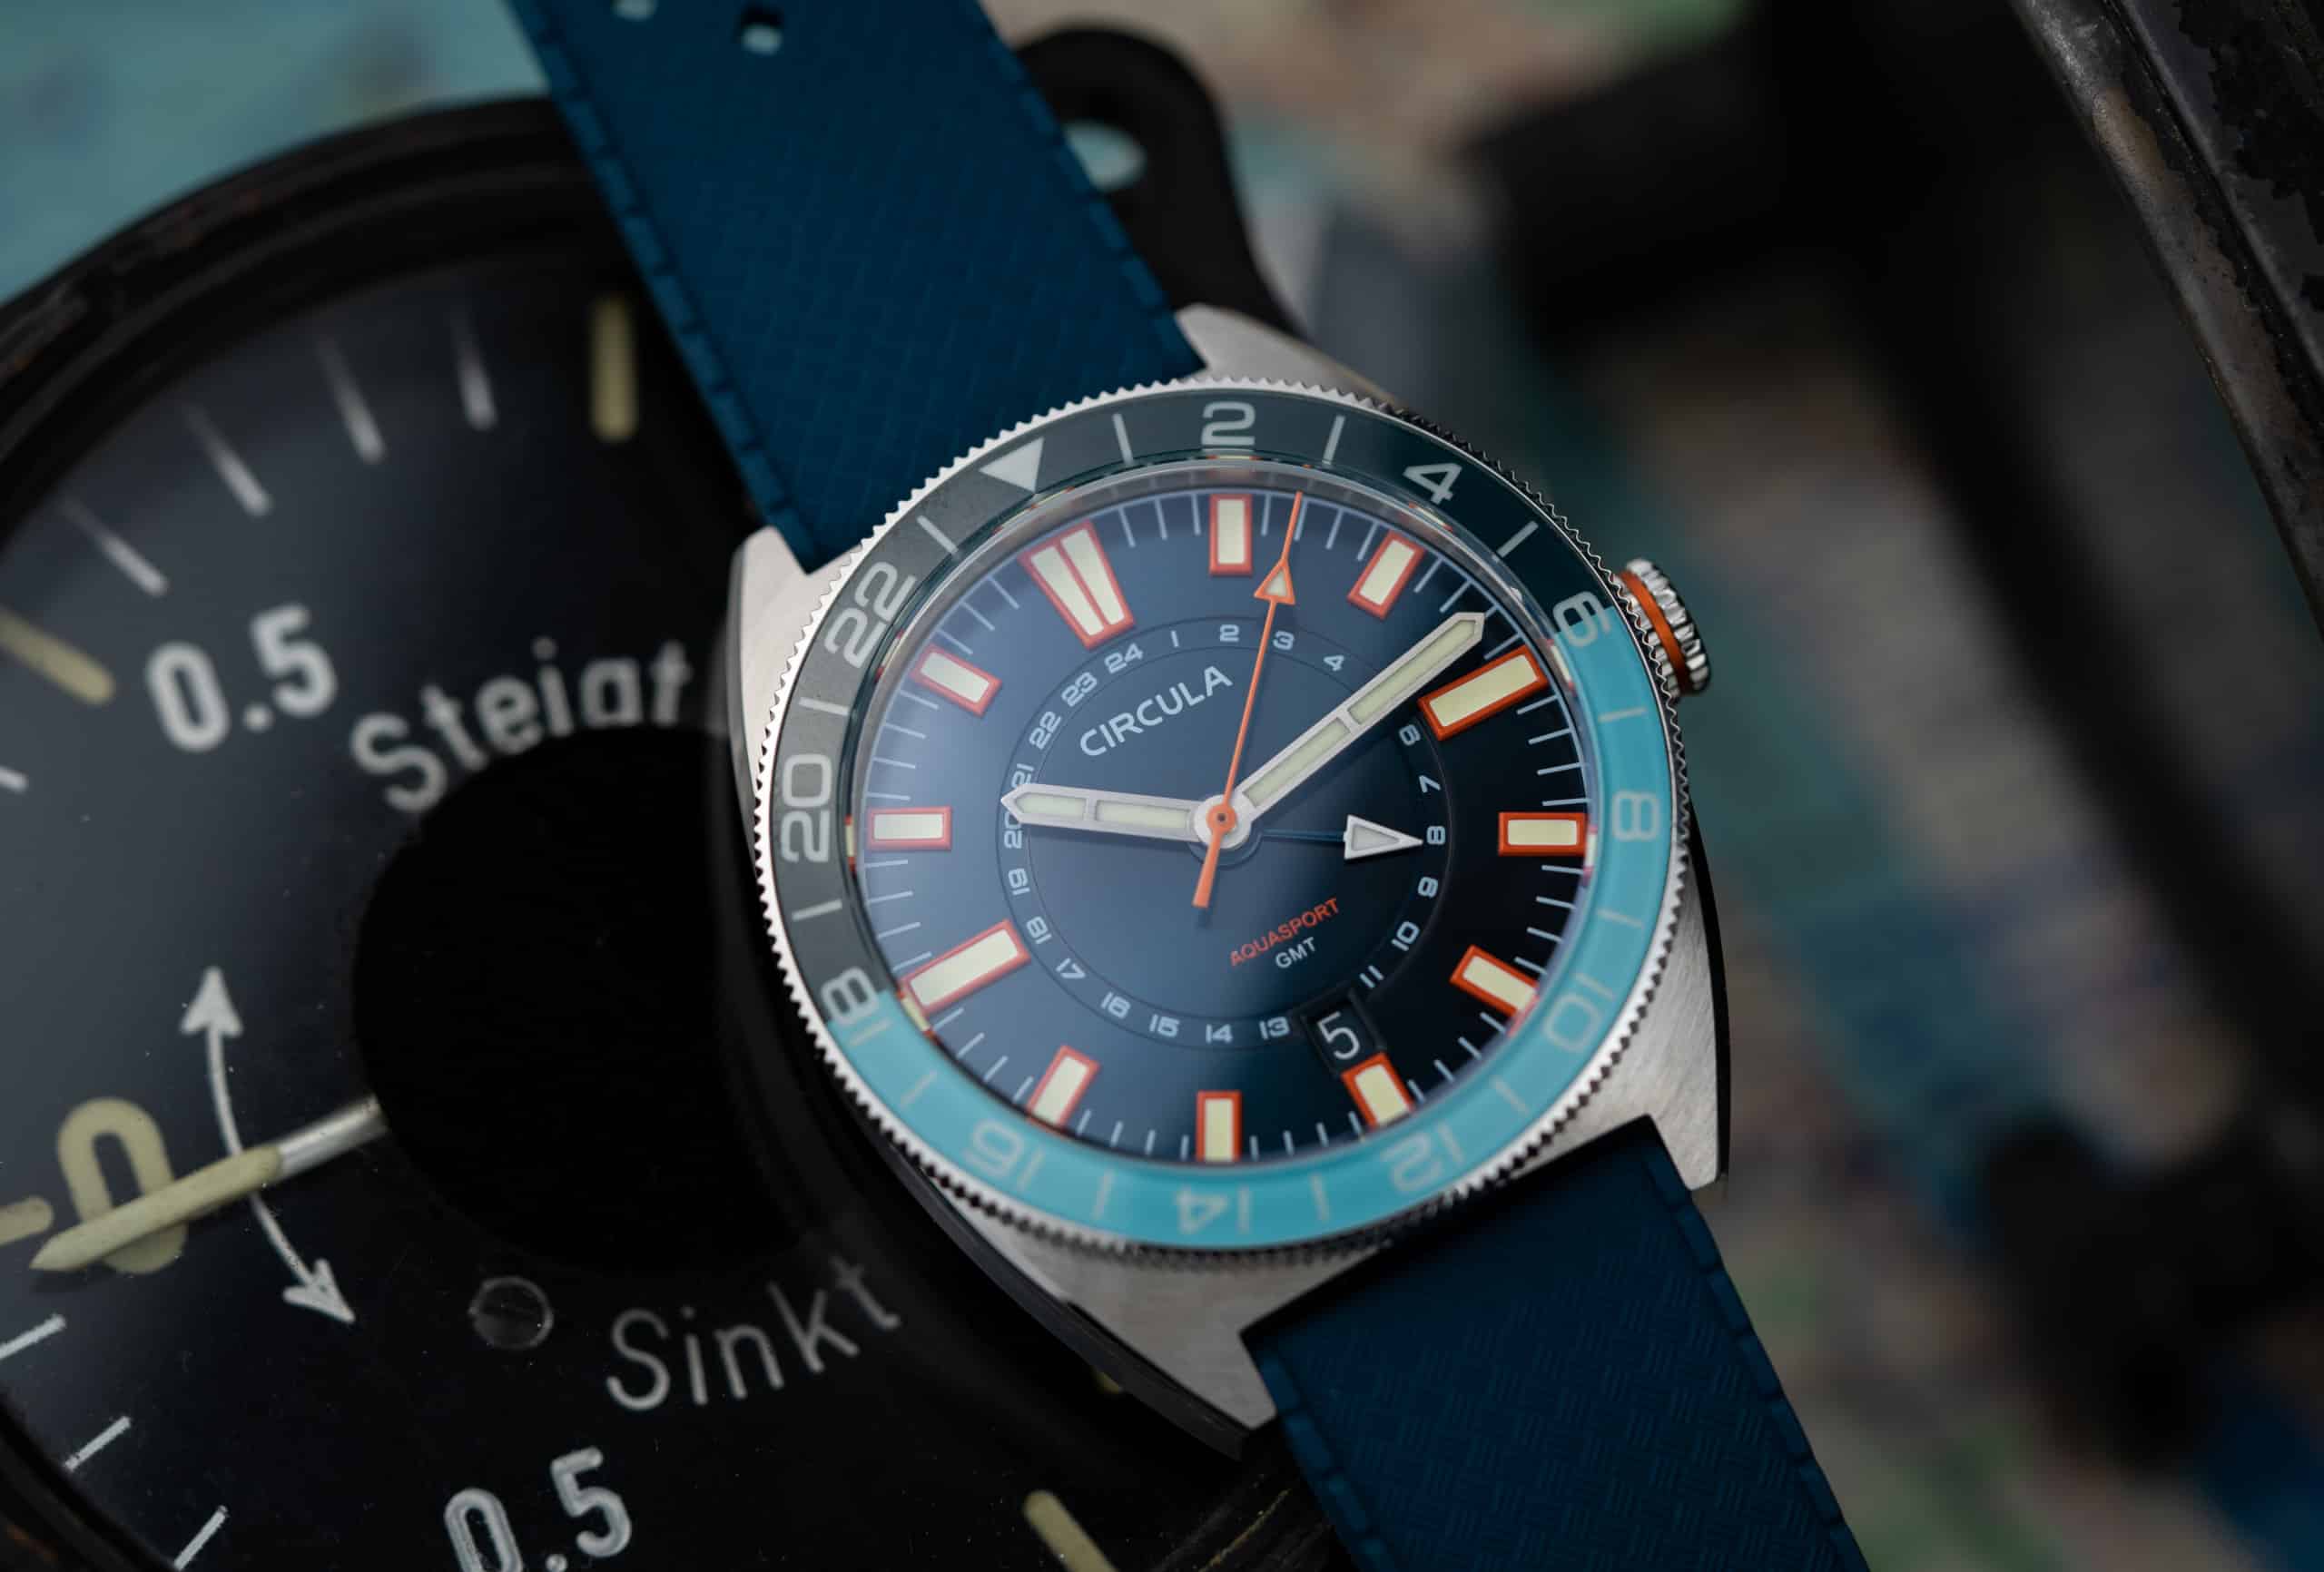 Circula Introduces a GMT into their AquaSport Diver Collection